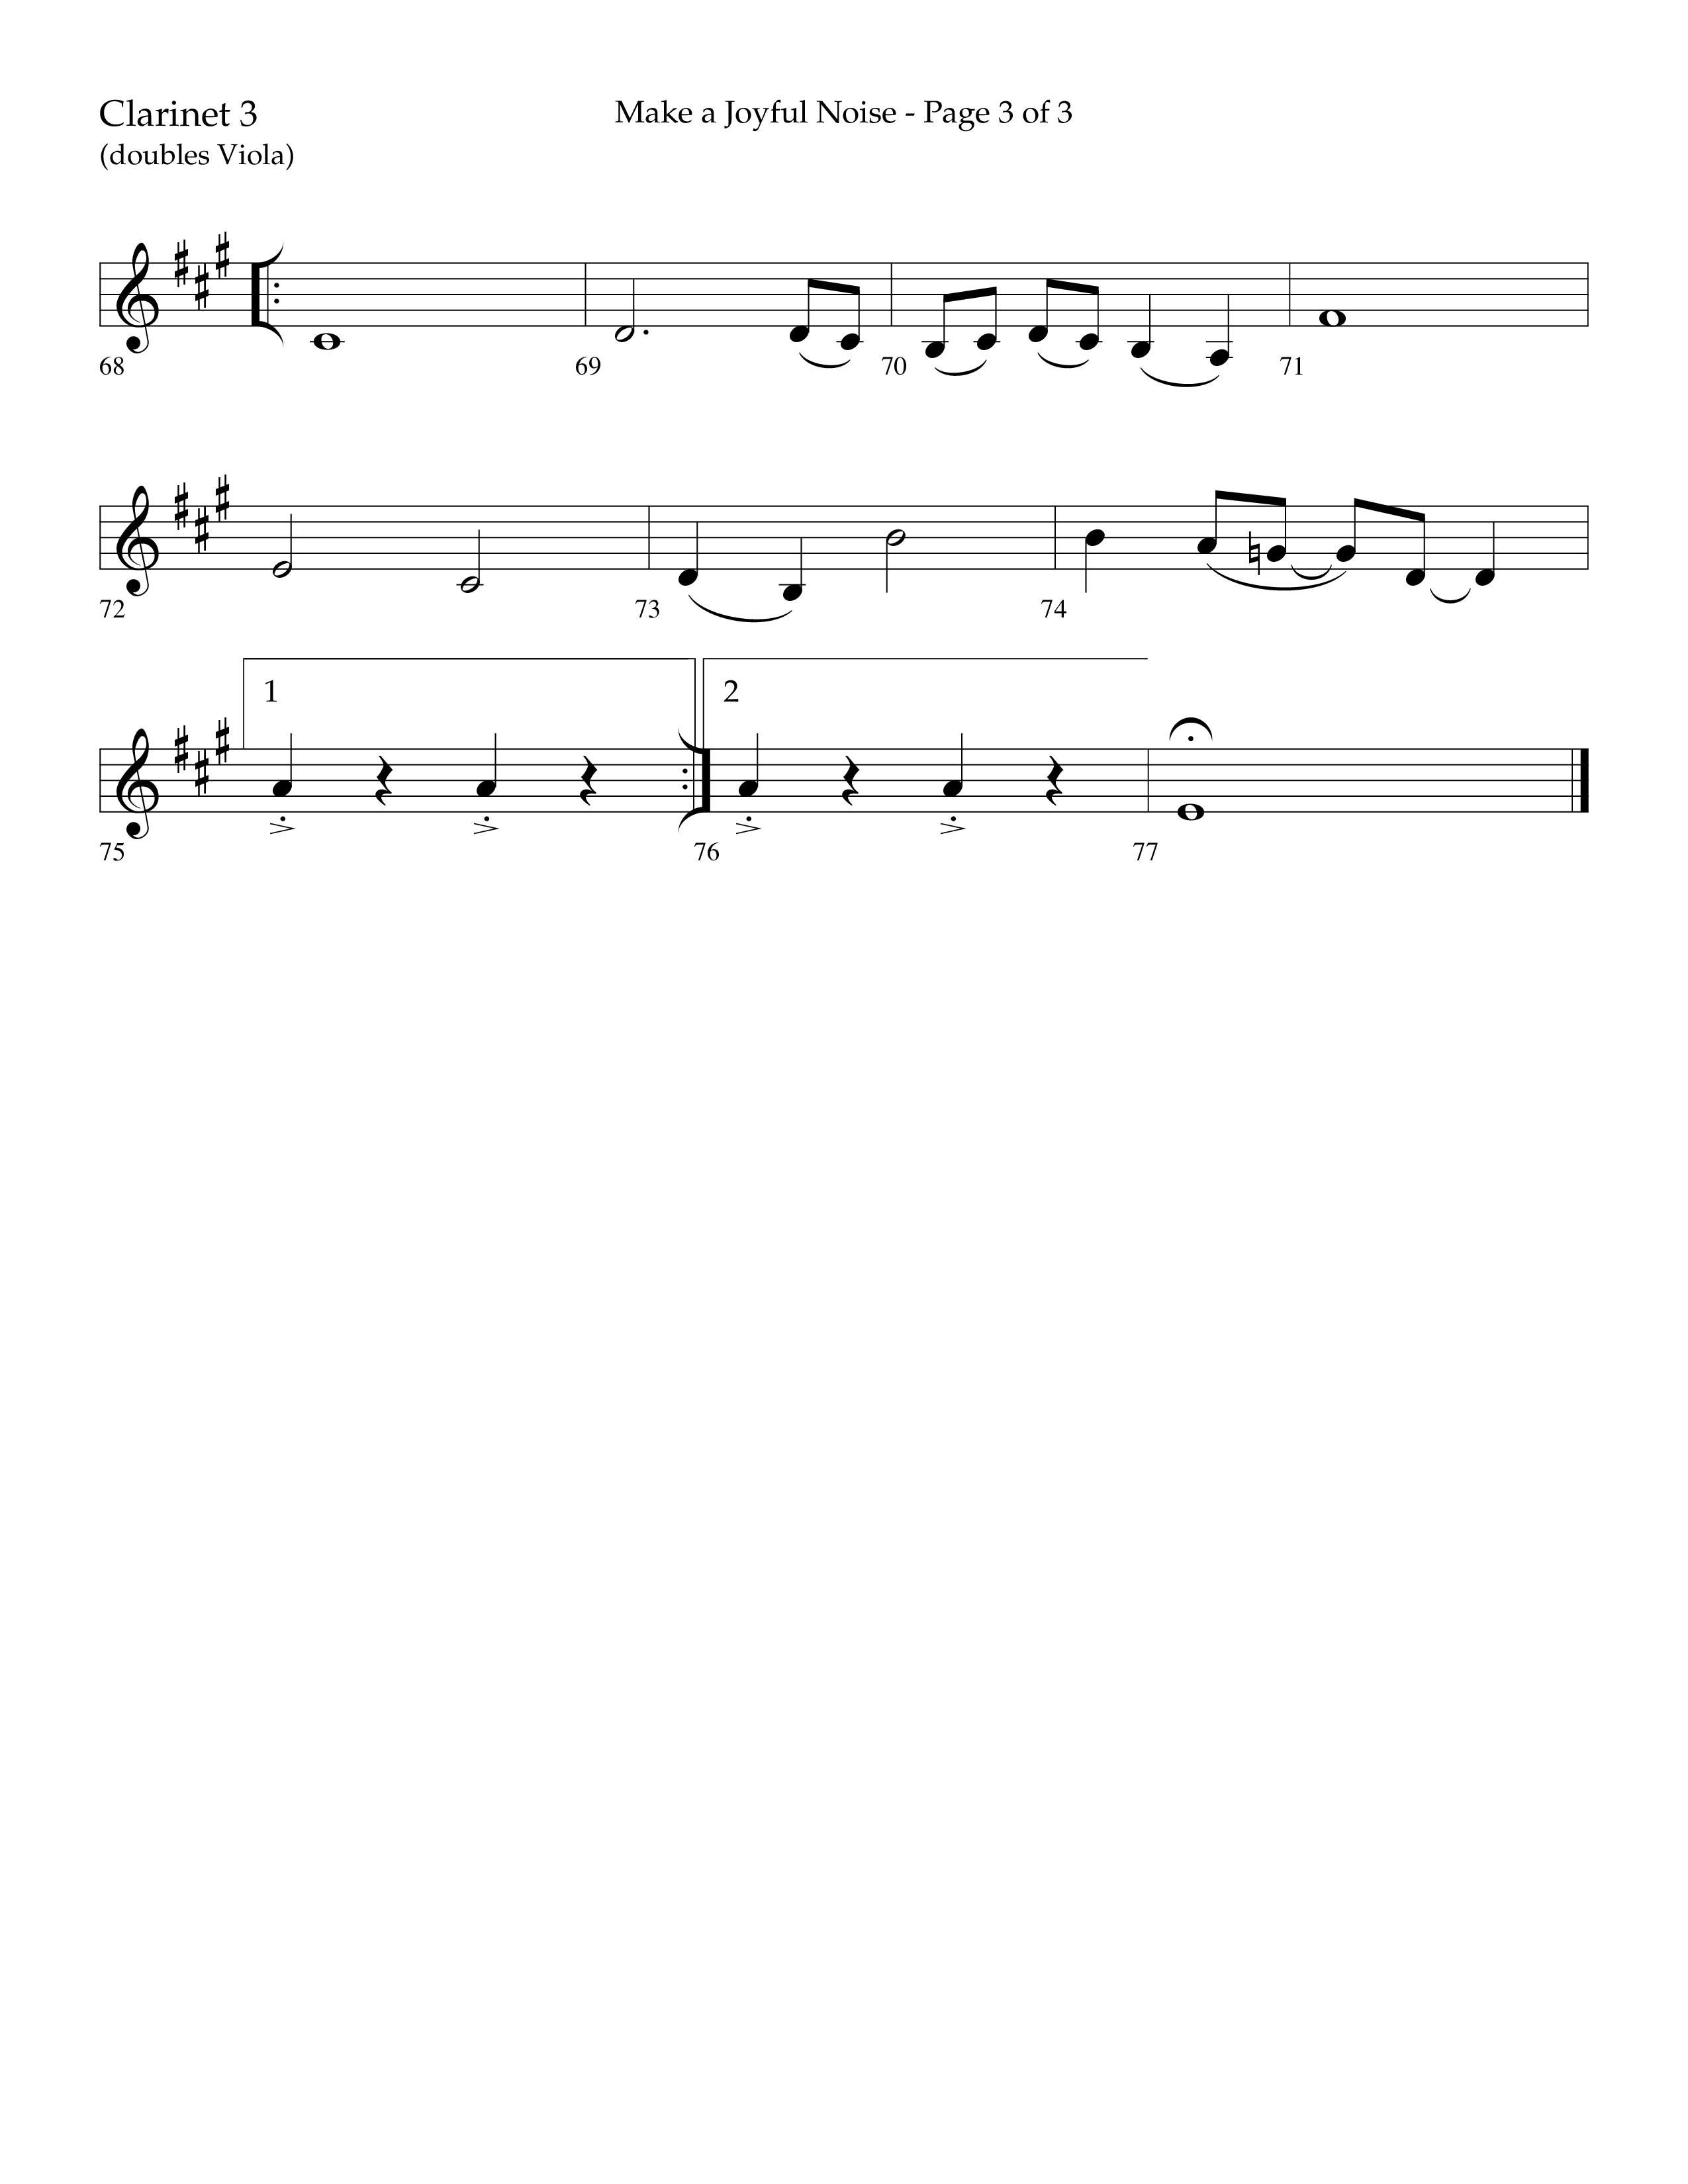 Make A Joyful Noise (Choral Anthem SATB) Clarinet 3 (Lifeway Choral / Arr. David Wise / Orch. Daniel Semsen)